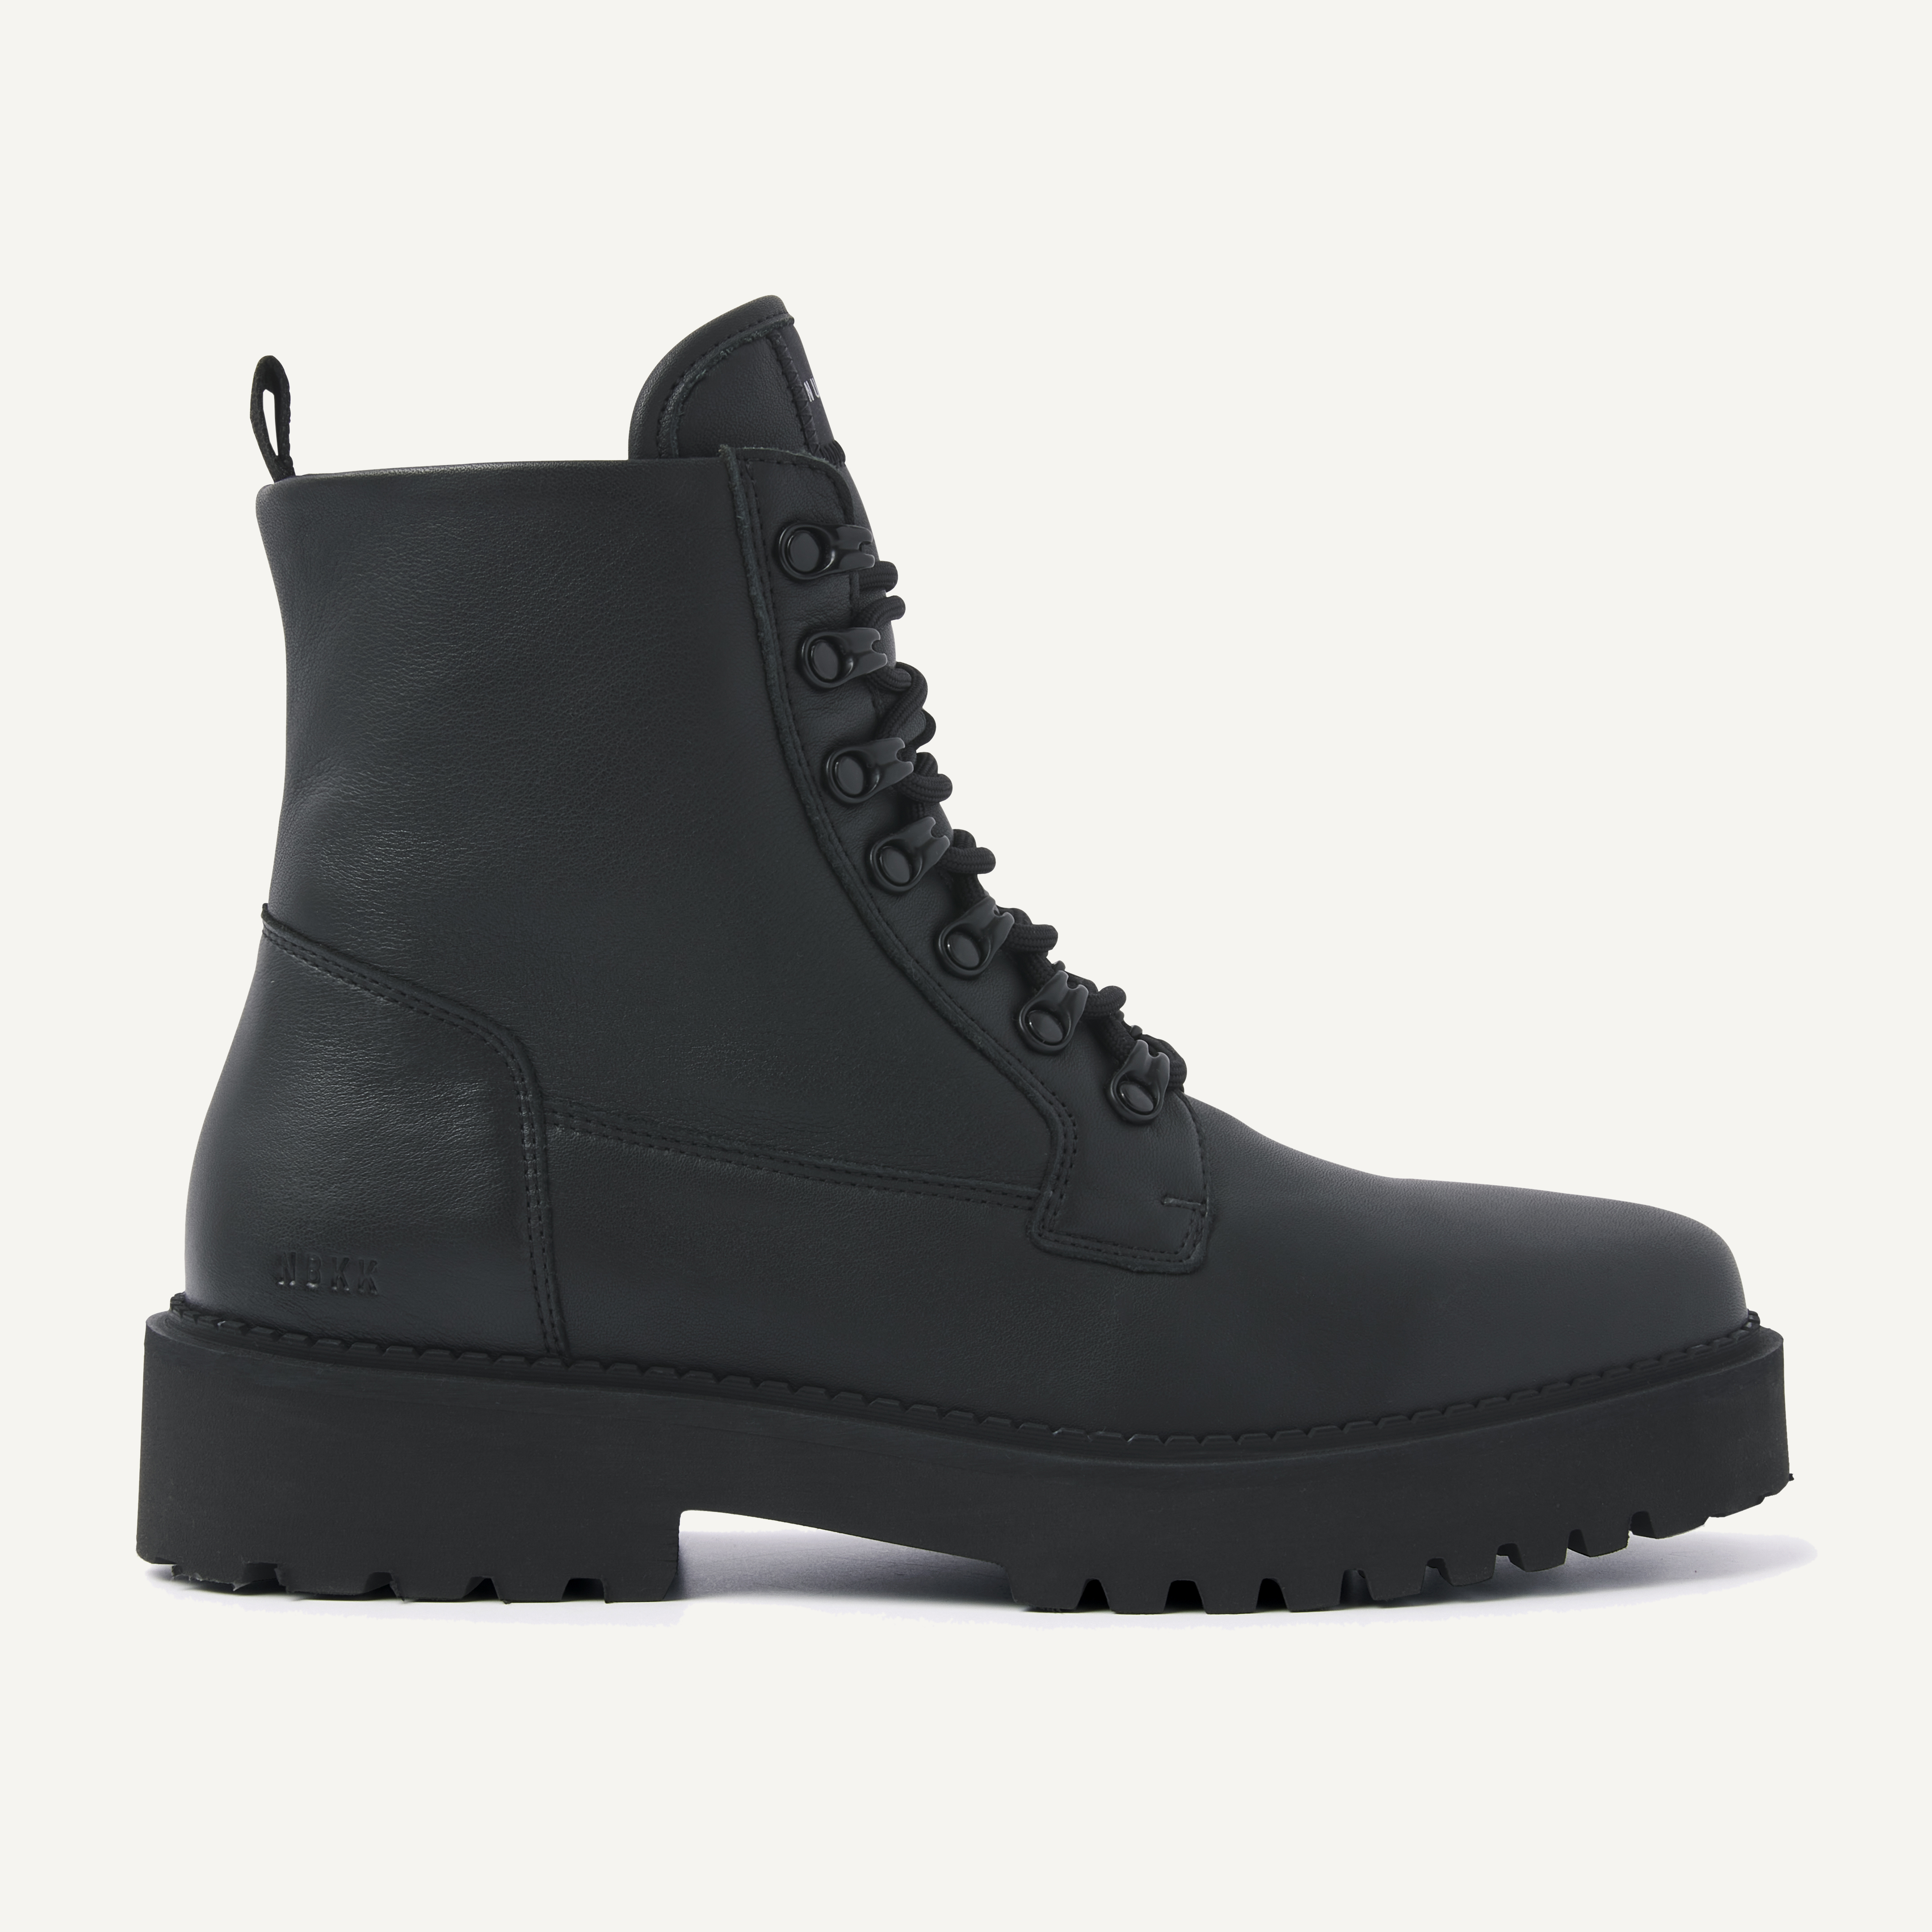 Logan Harbor | Black boots for men